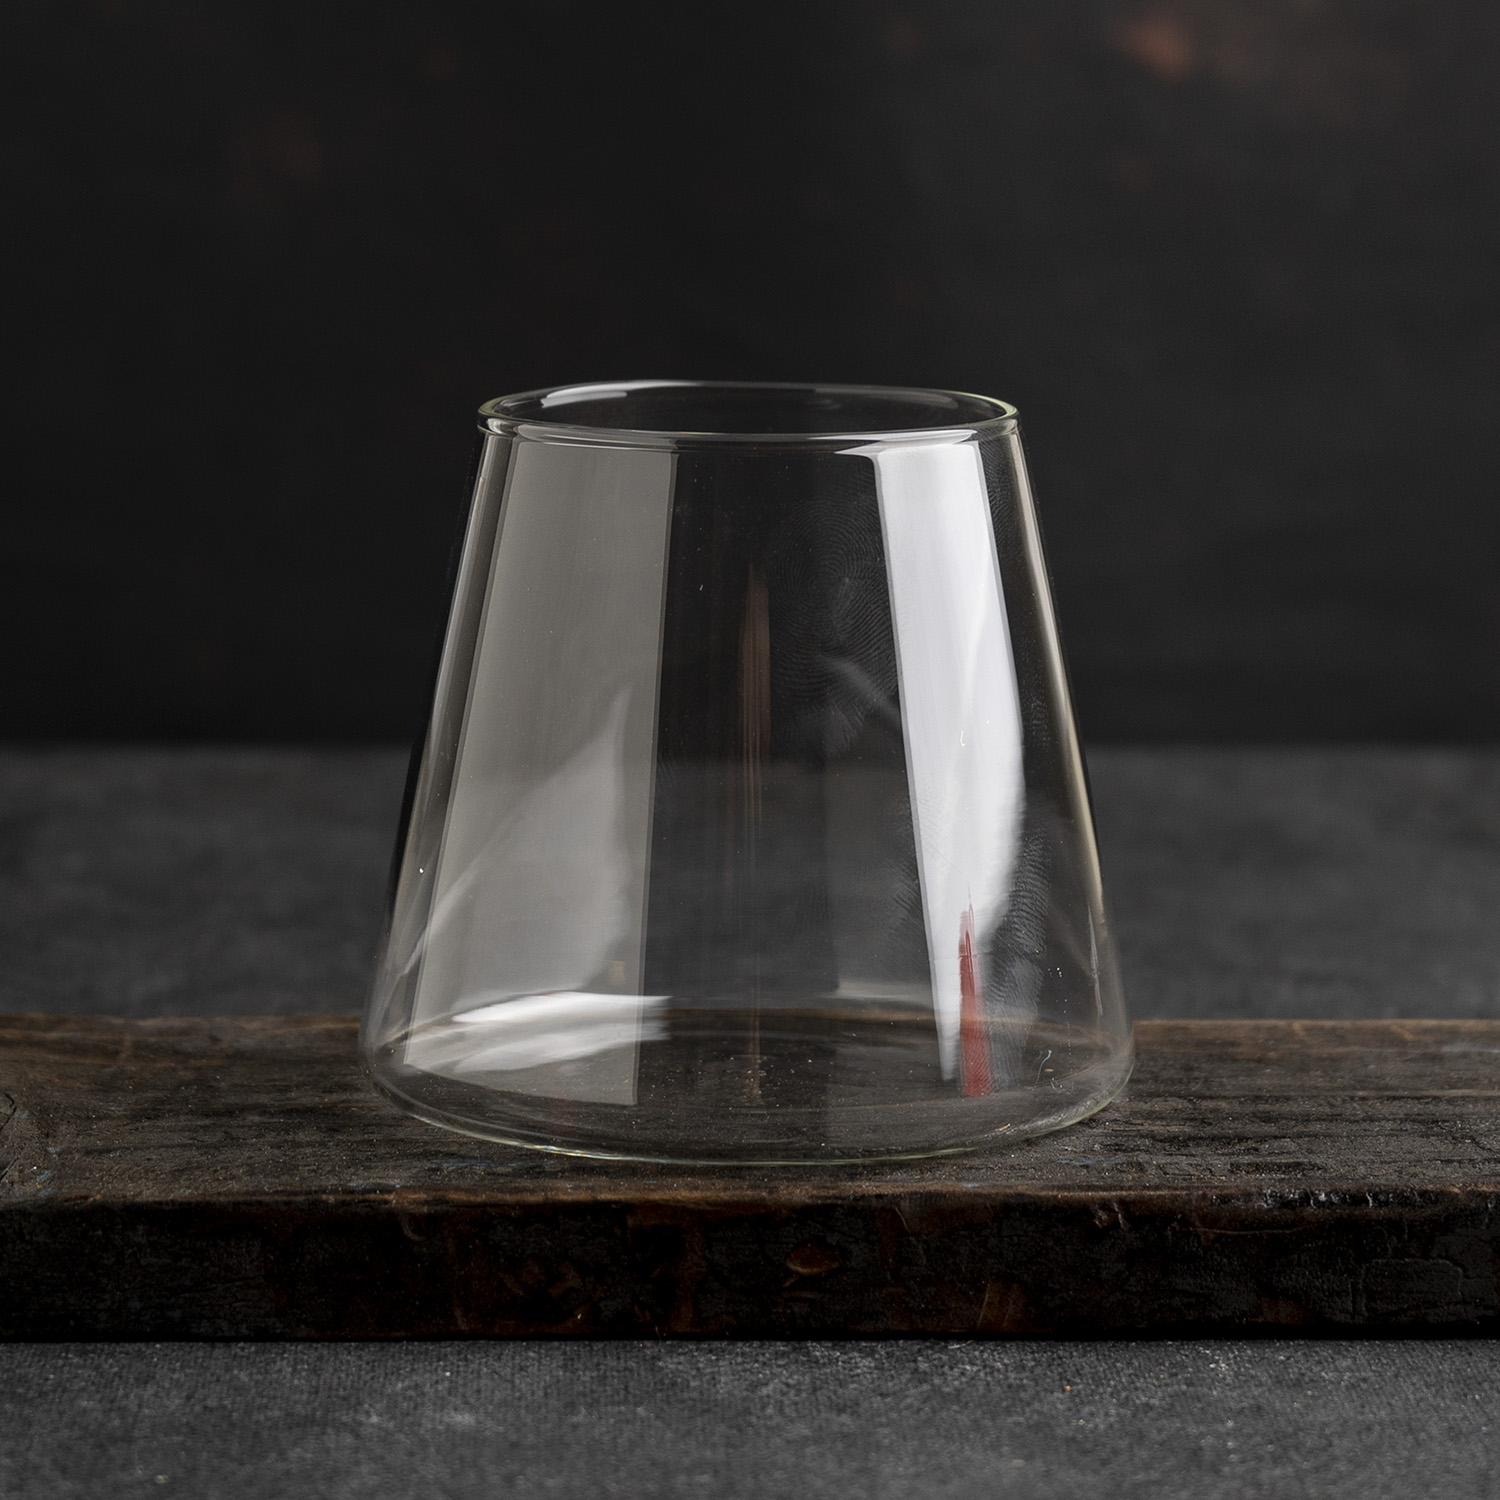 Vaso de vidrio elegante